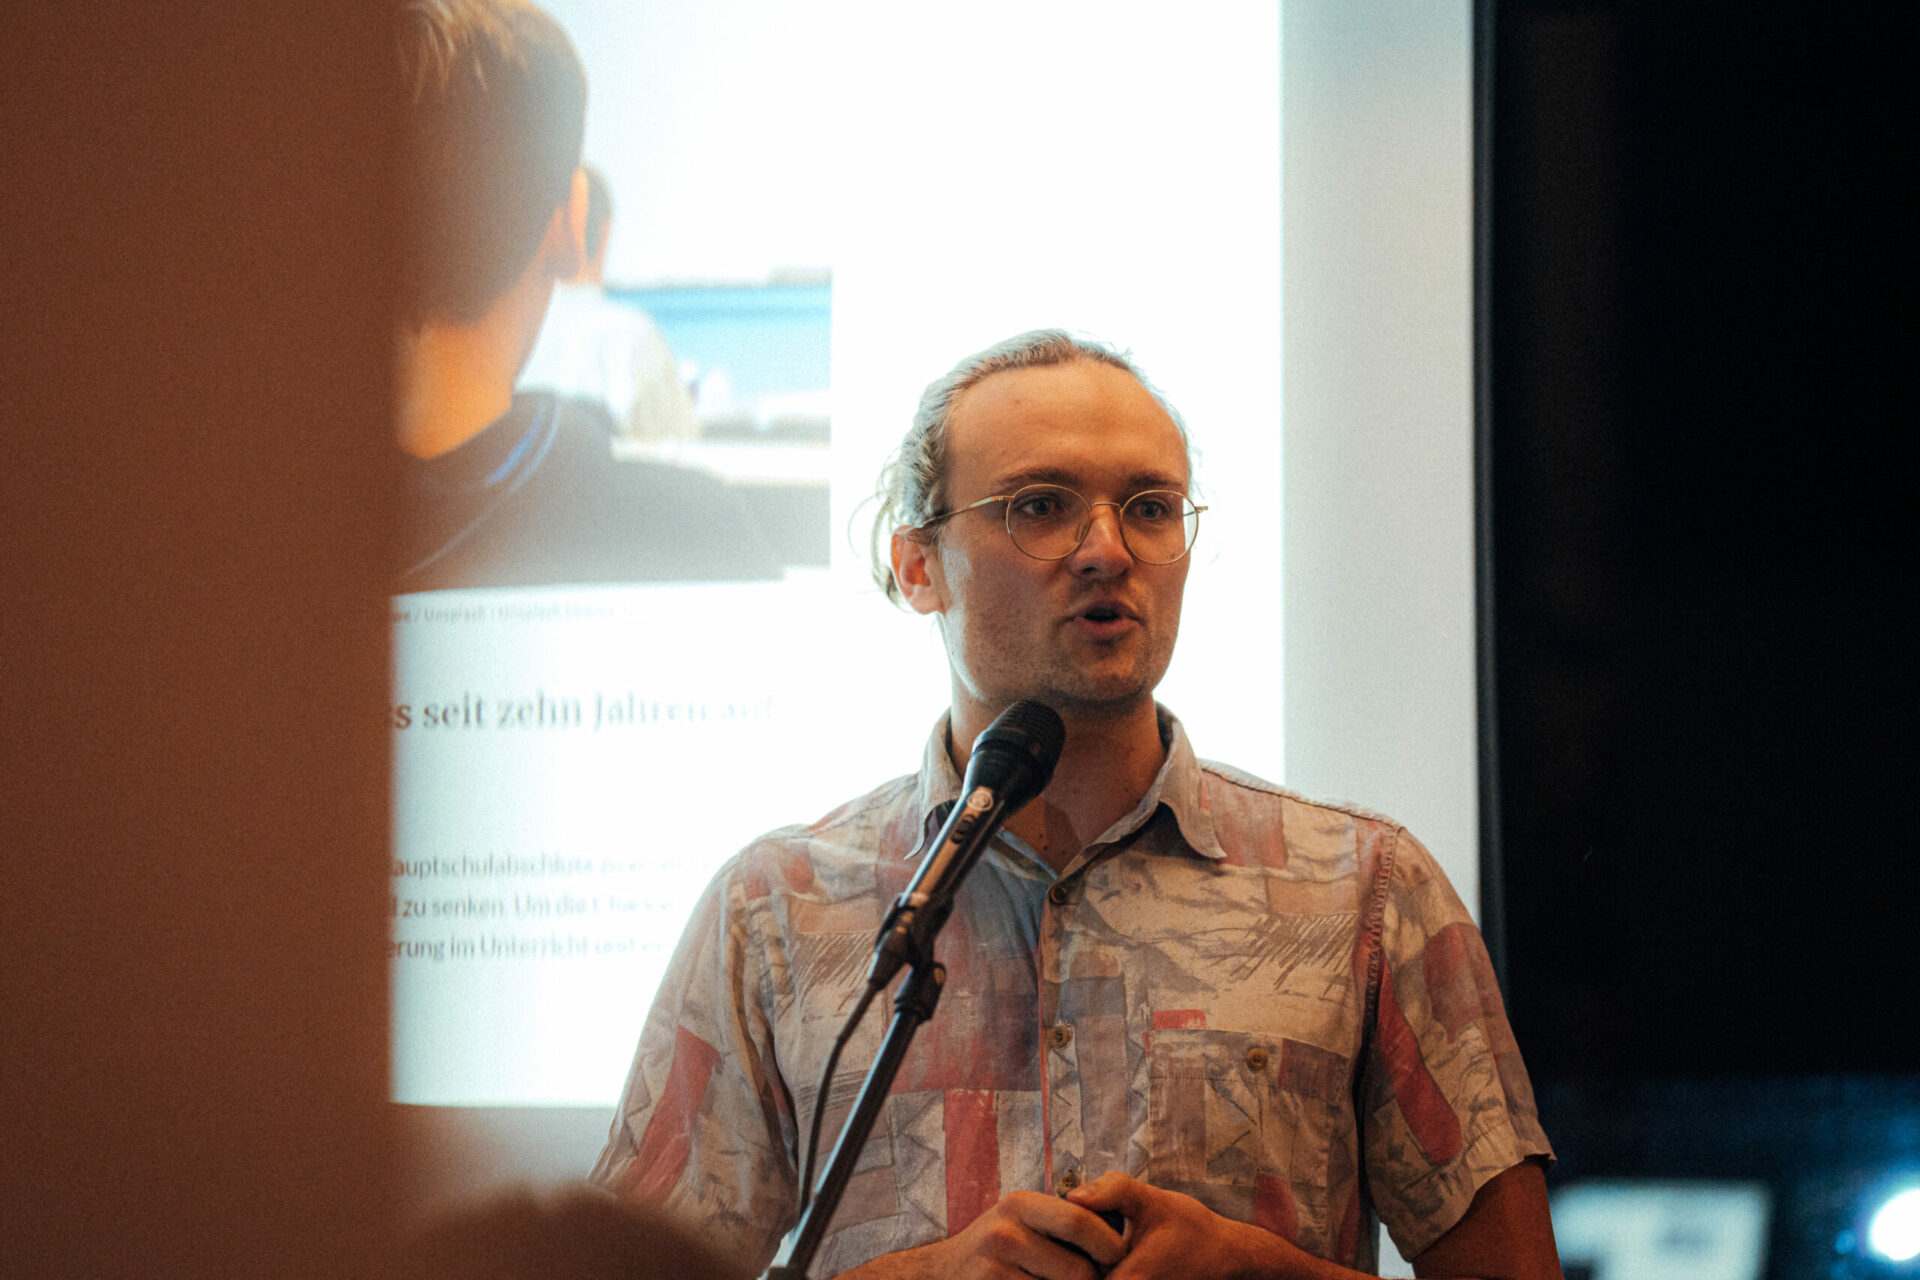 Zu sehen ist Matthias Fischer vor einer Powerpoint-Präsentation.